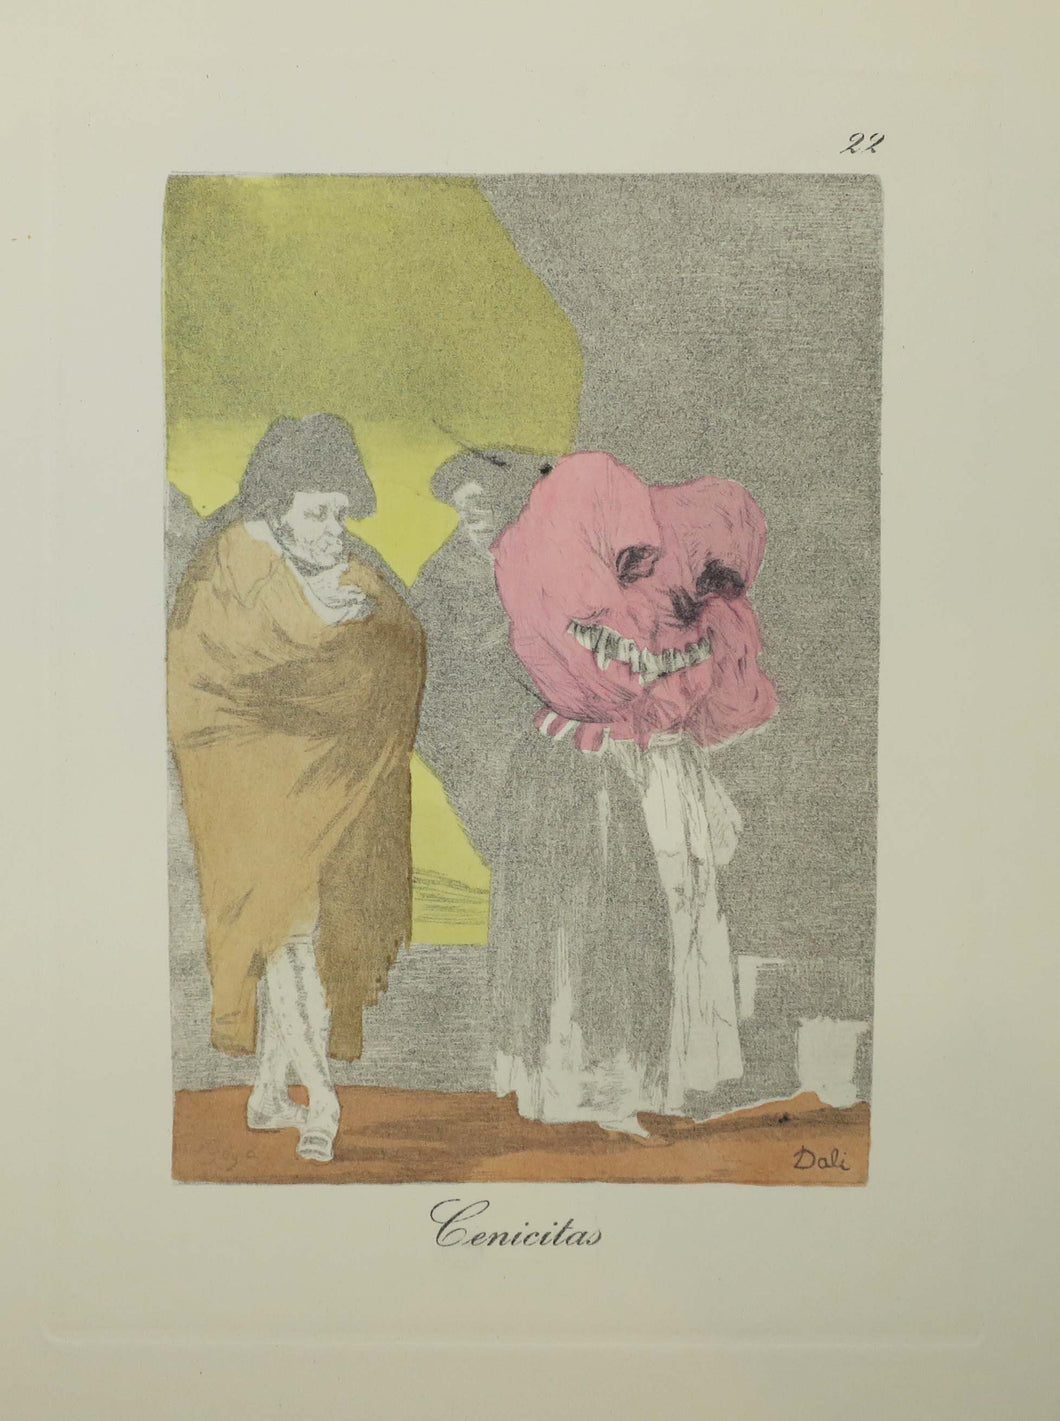 Cenicitas. Les Caprices de Goya de Dali. 1977.